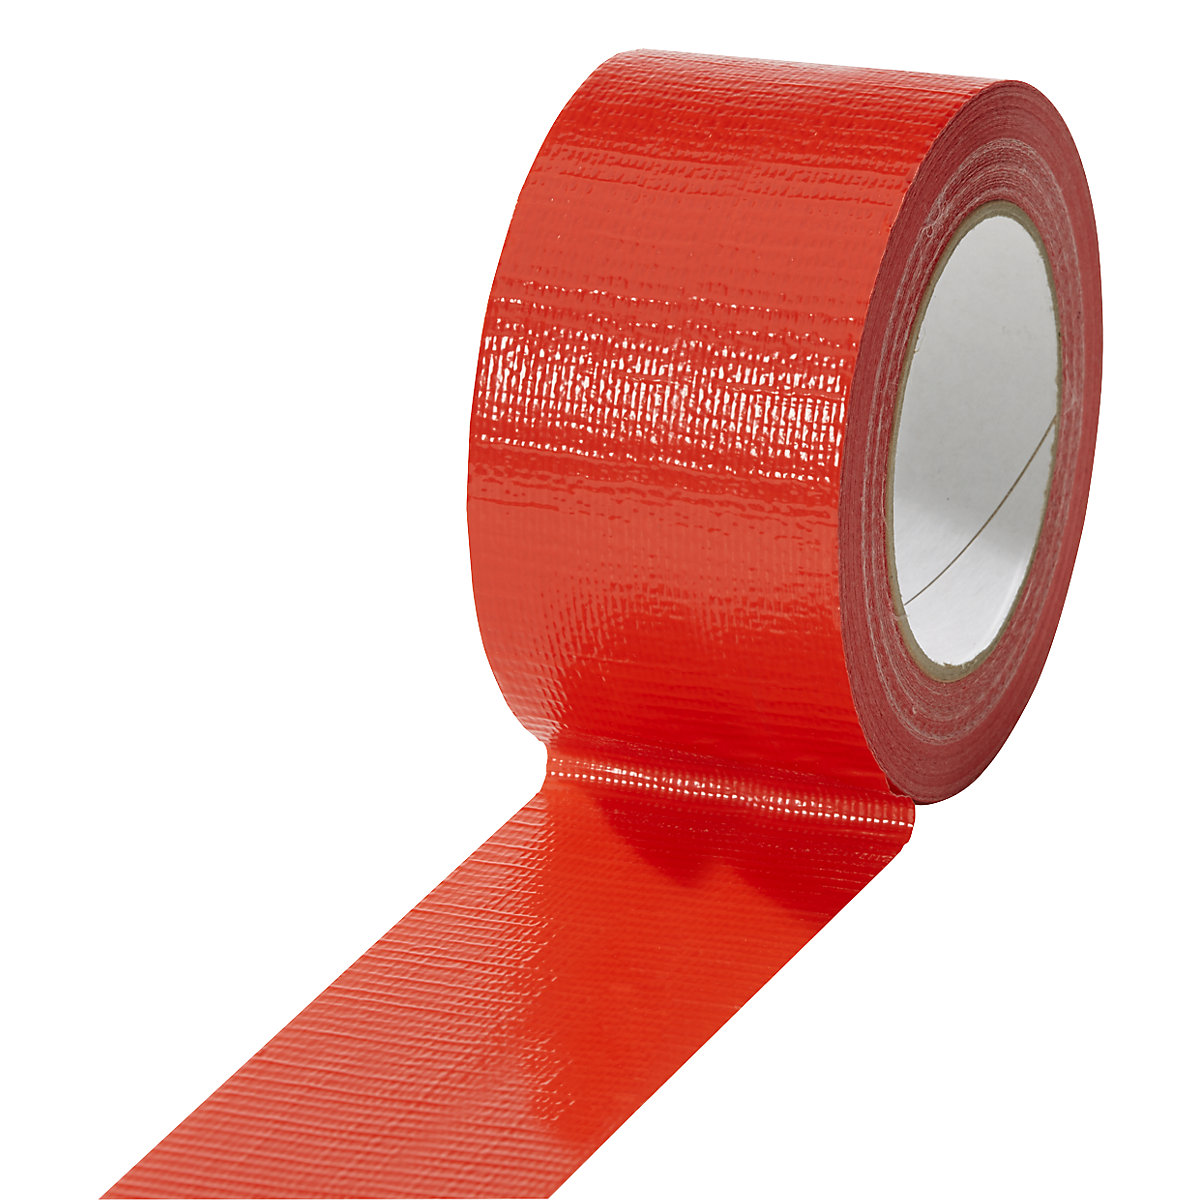 Taśma tkaninowa, w różnych kolorach, opak. 18 rolek, czerwona, szer. taśmy 50 mm-20